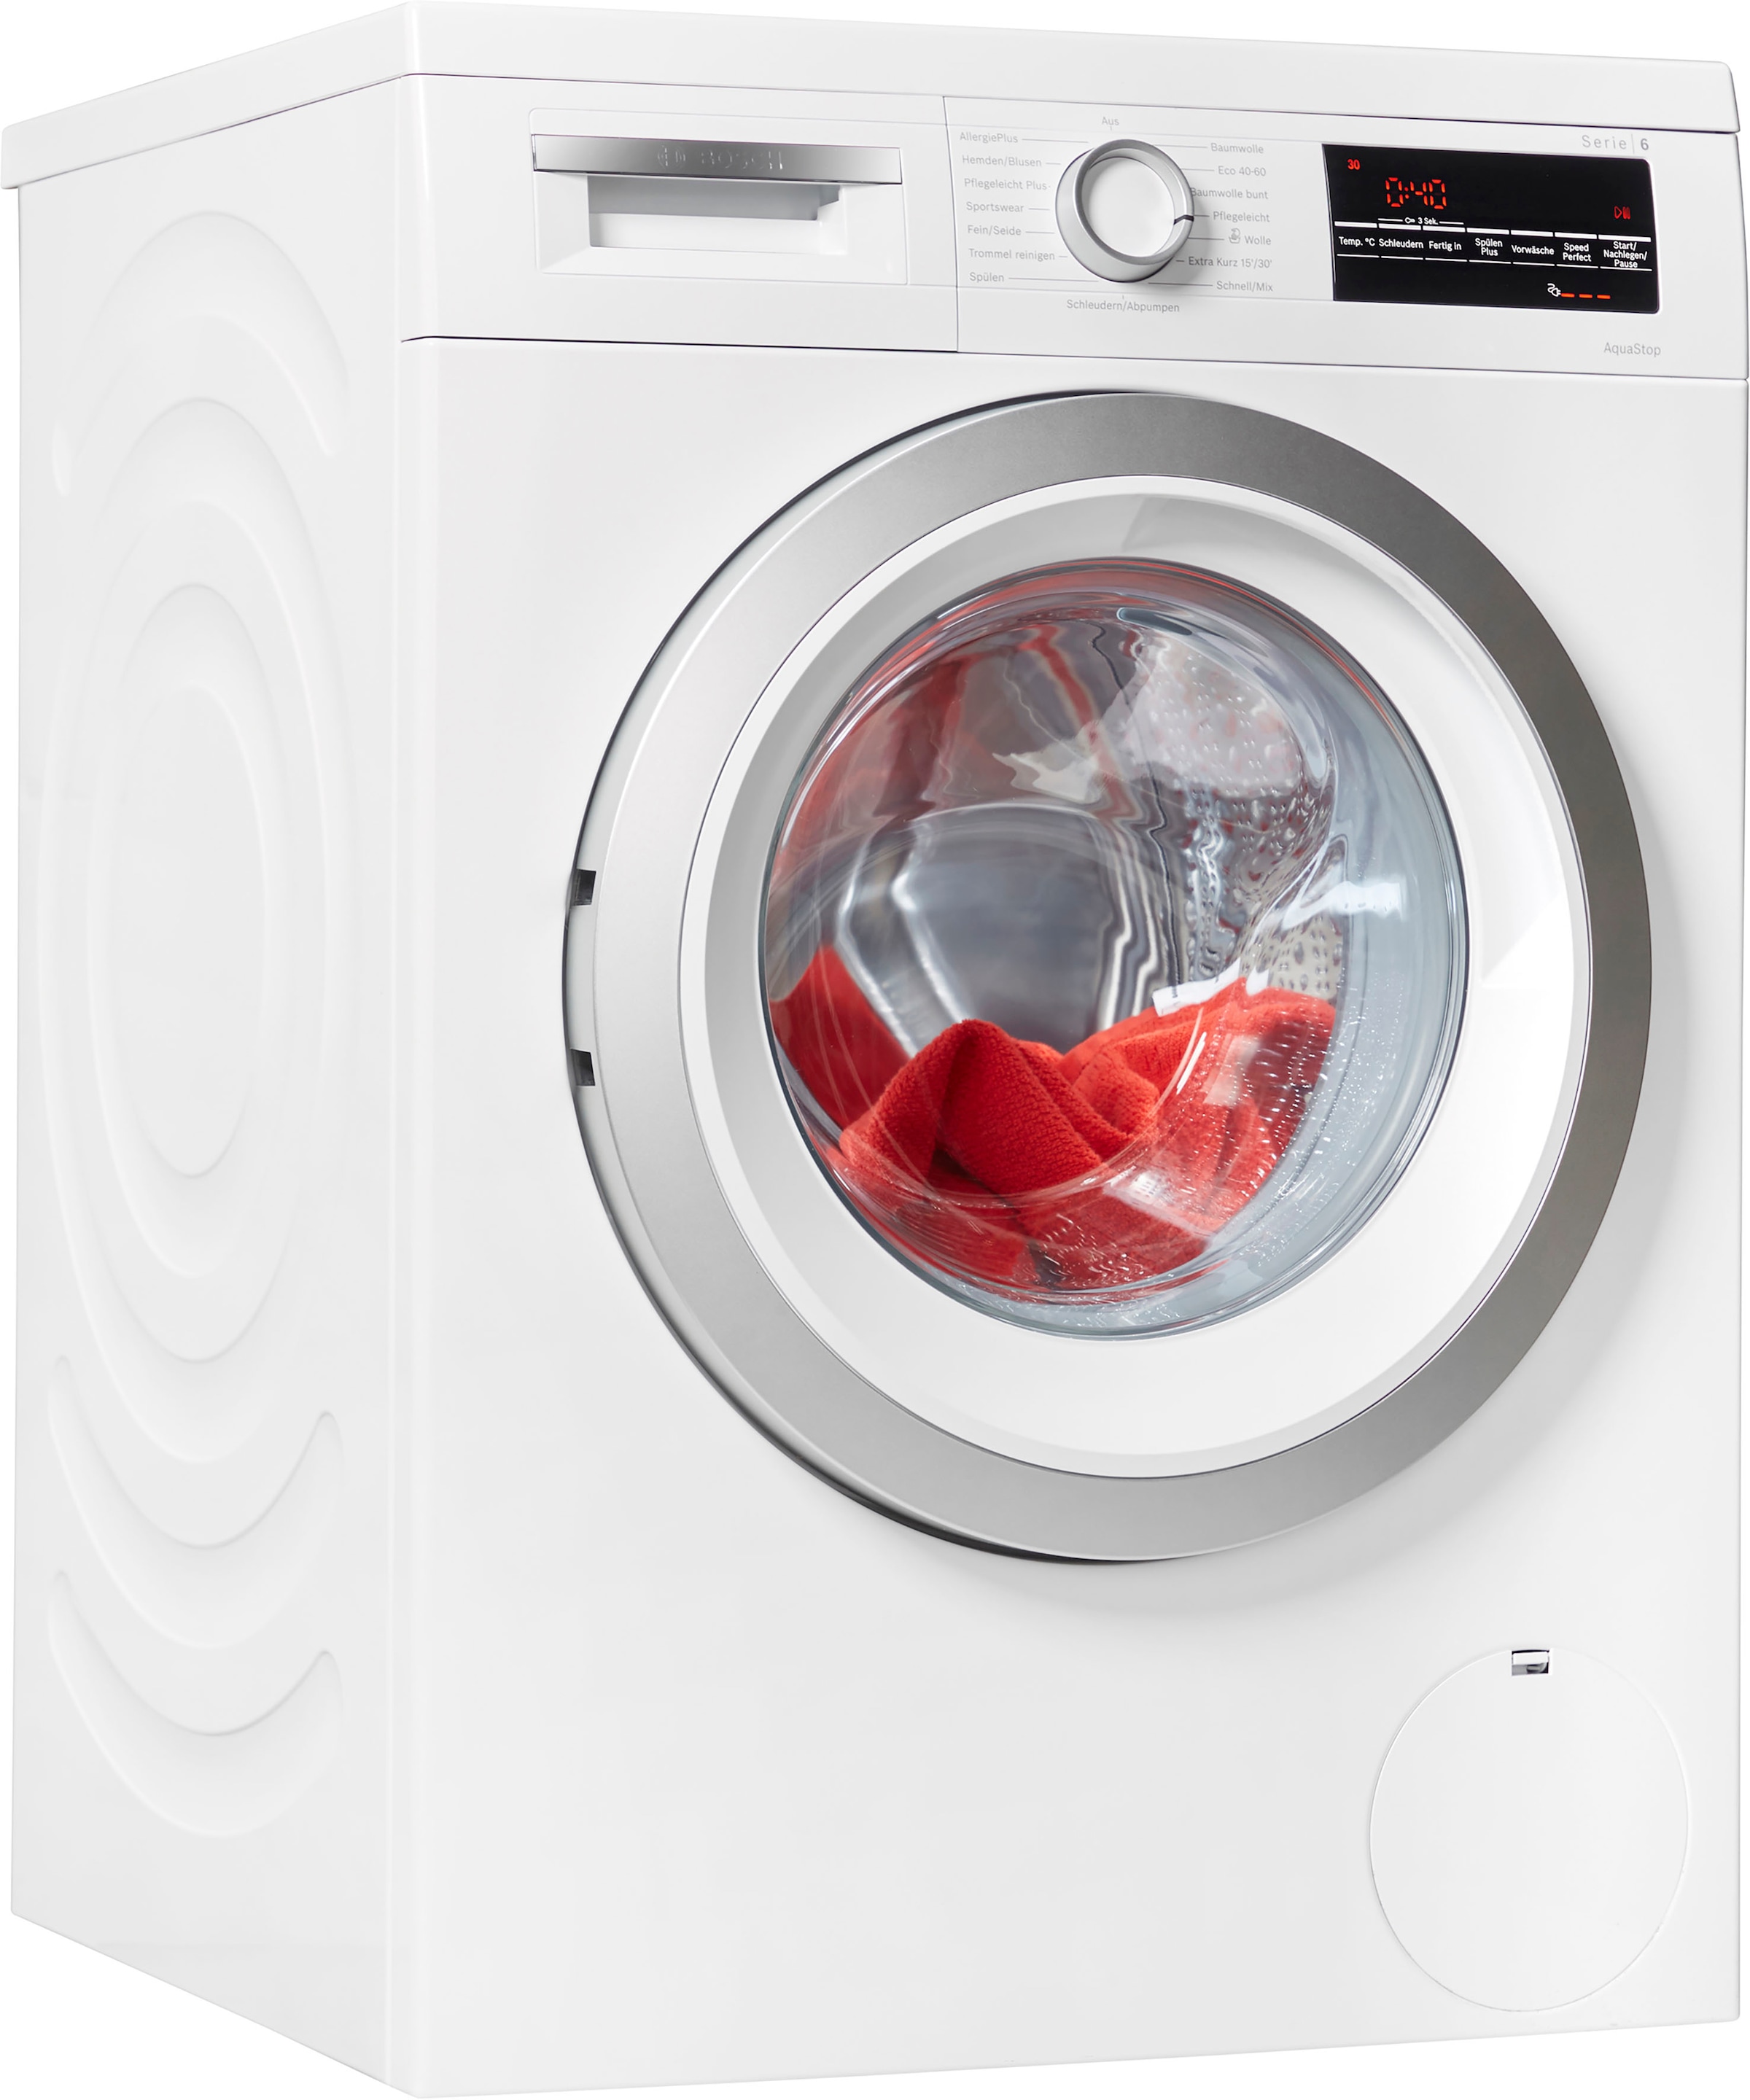 BOSCH Waschmaschine »WUU28T40«, 6, WUU28T40, 8 kg, 1400 U/min,  unterbaufähig online kaufen